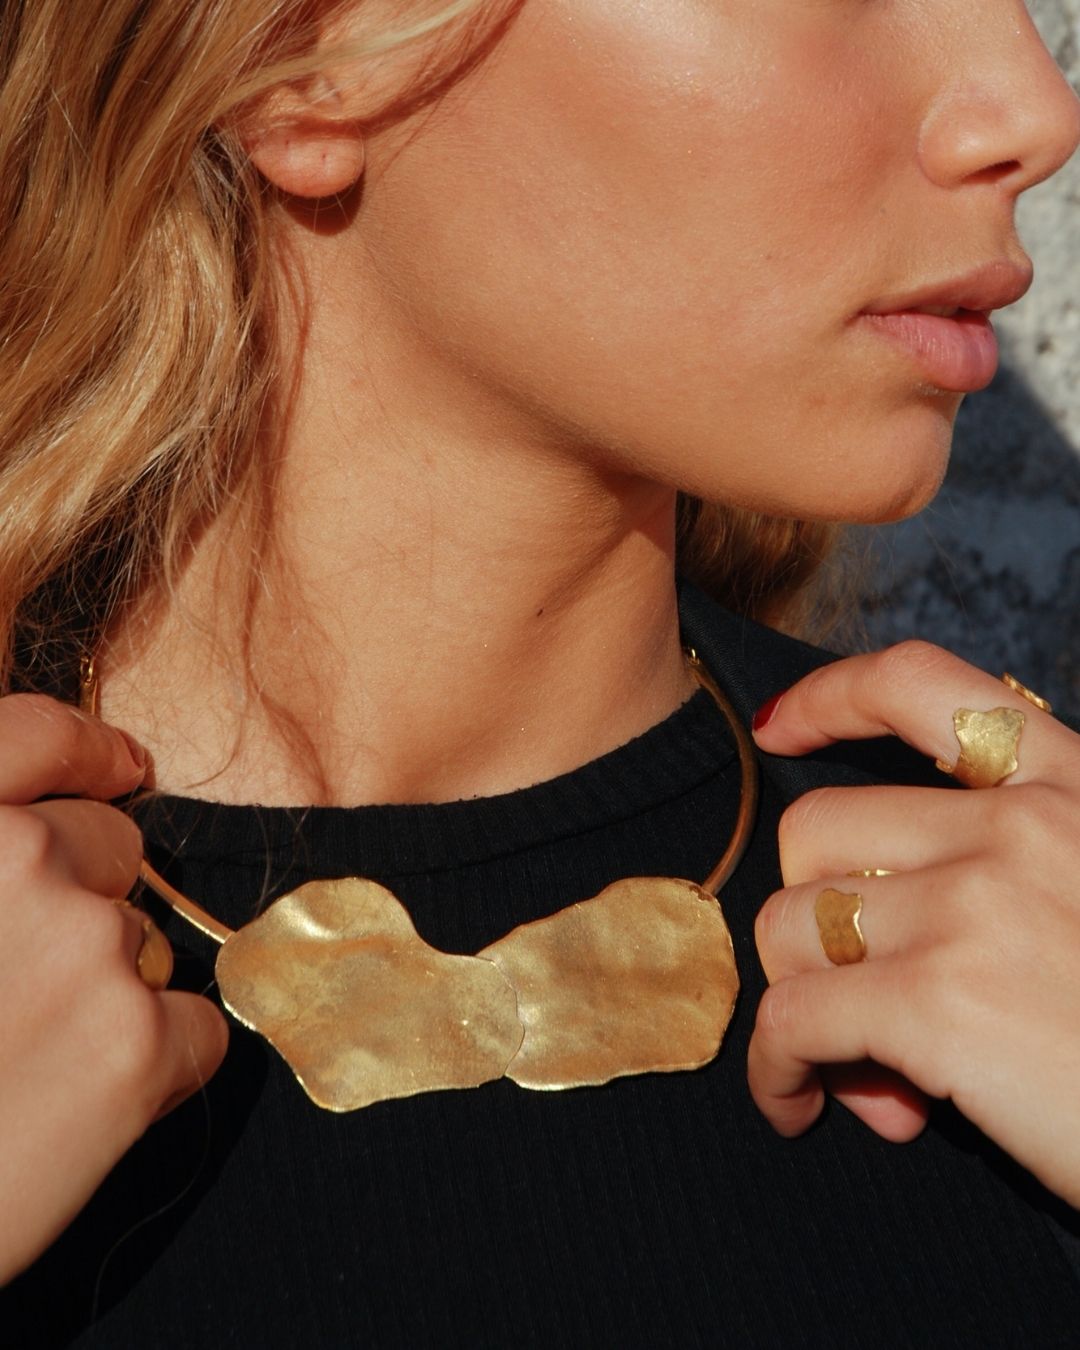 Le collier de l'Édition 01 a été fabriqué à la main par nos artisans en Espagne, après avoir été dessiné par Barbara à Paris. Un collier de caractère intemporel à la texture unique disponible en laiton recyclé et plaqué or pur (24 carats, trois microns).